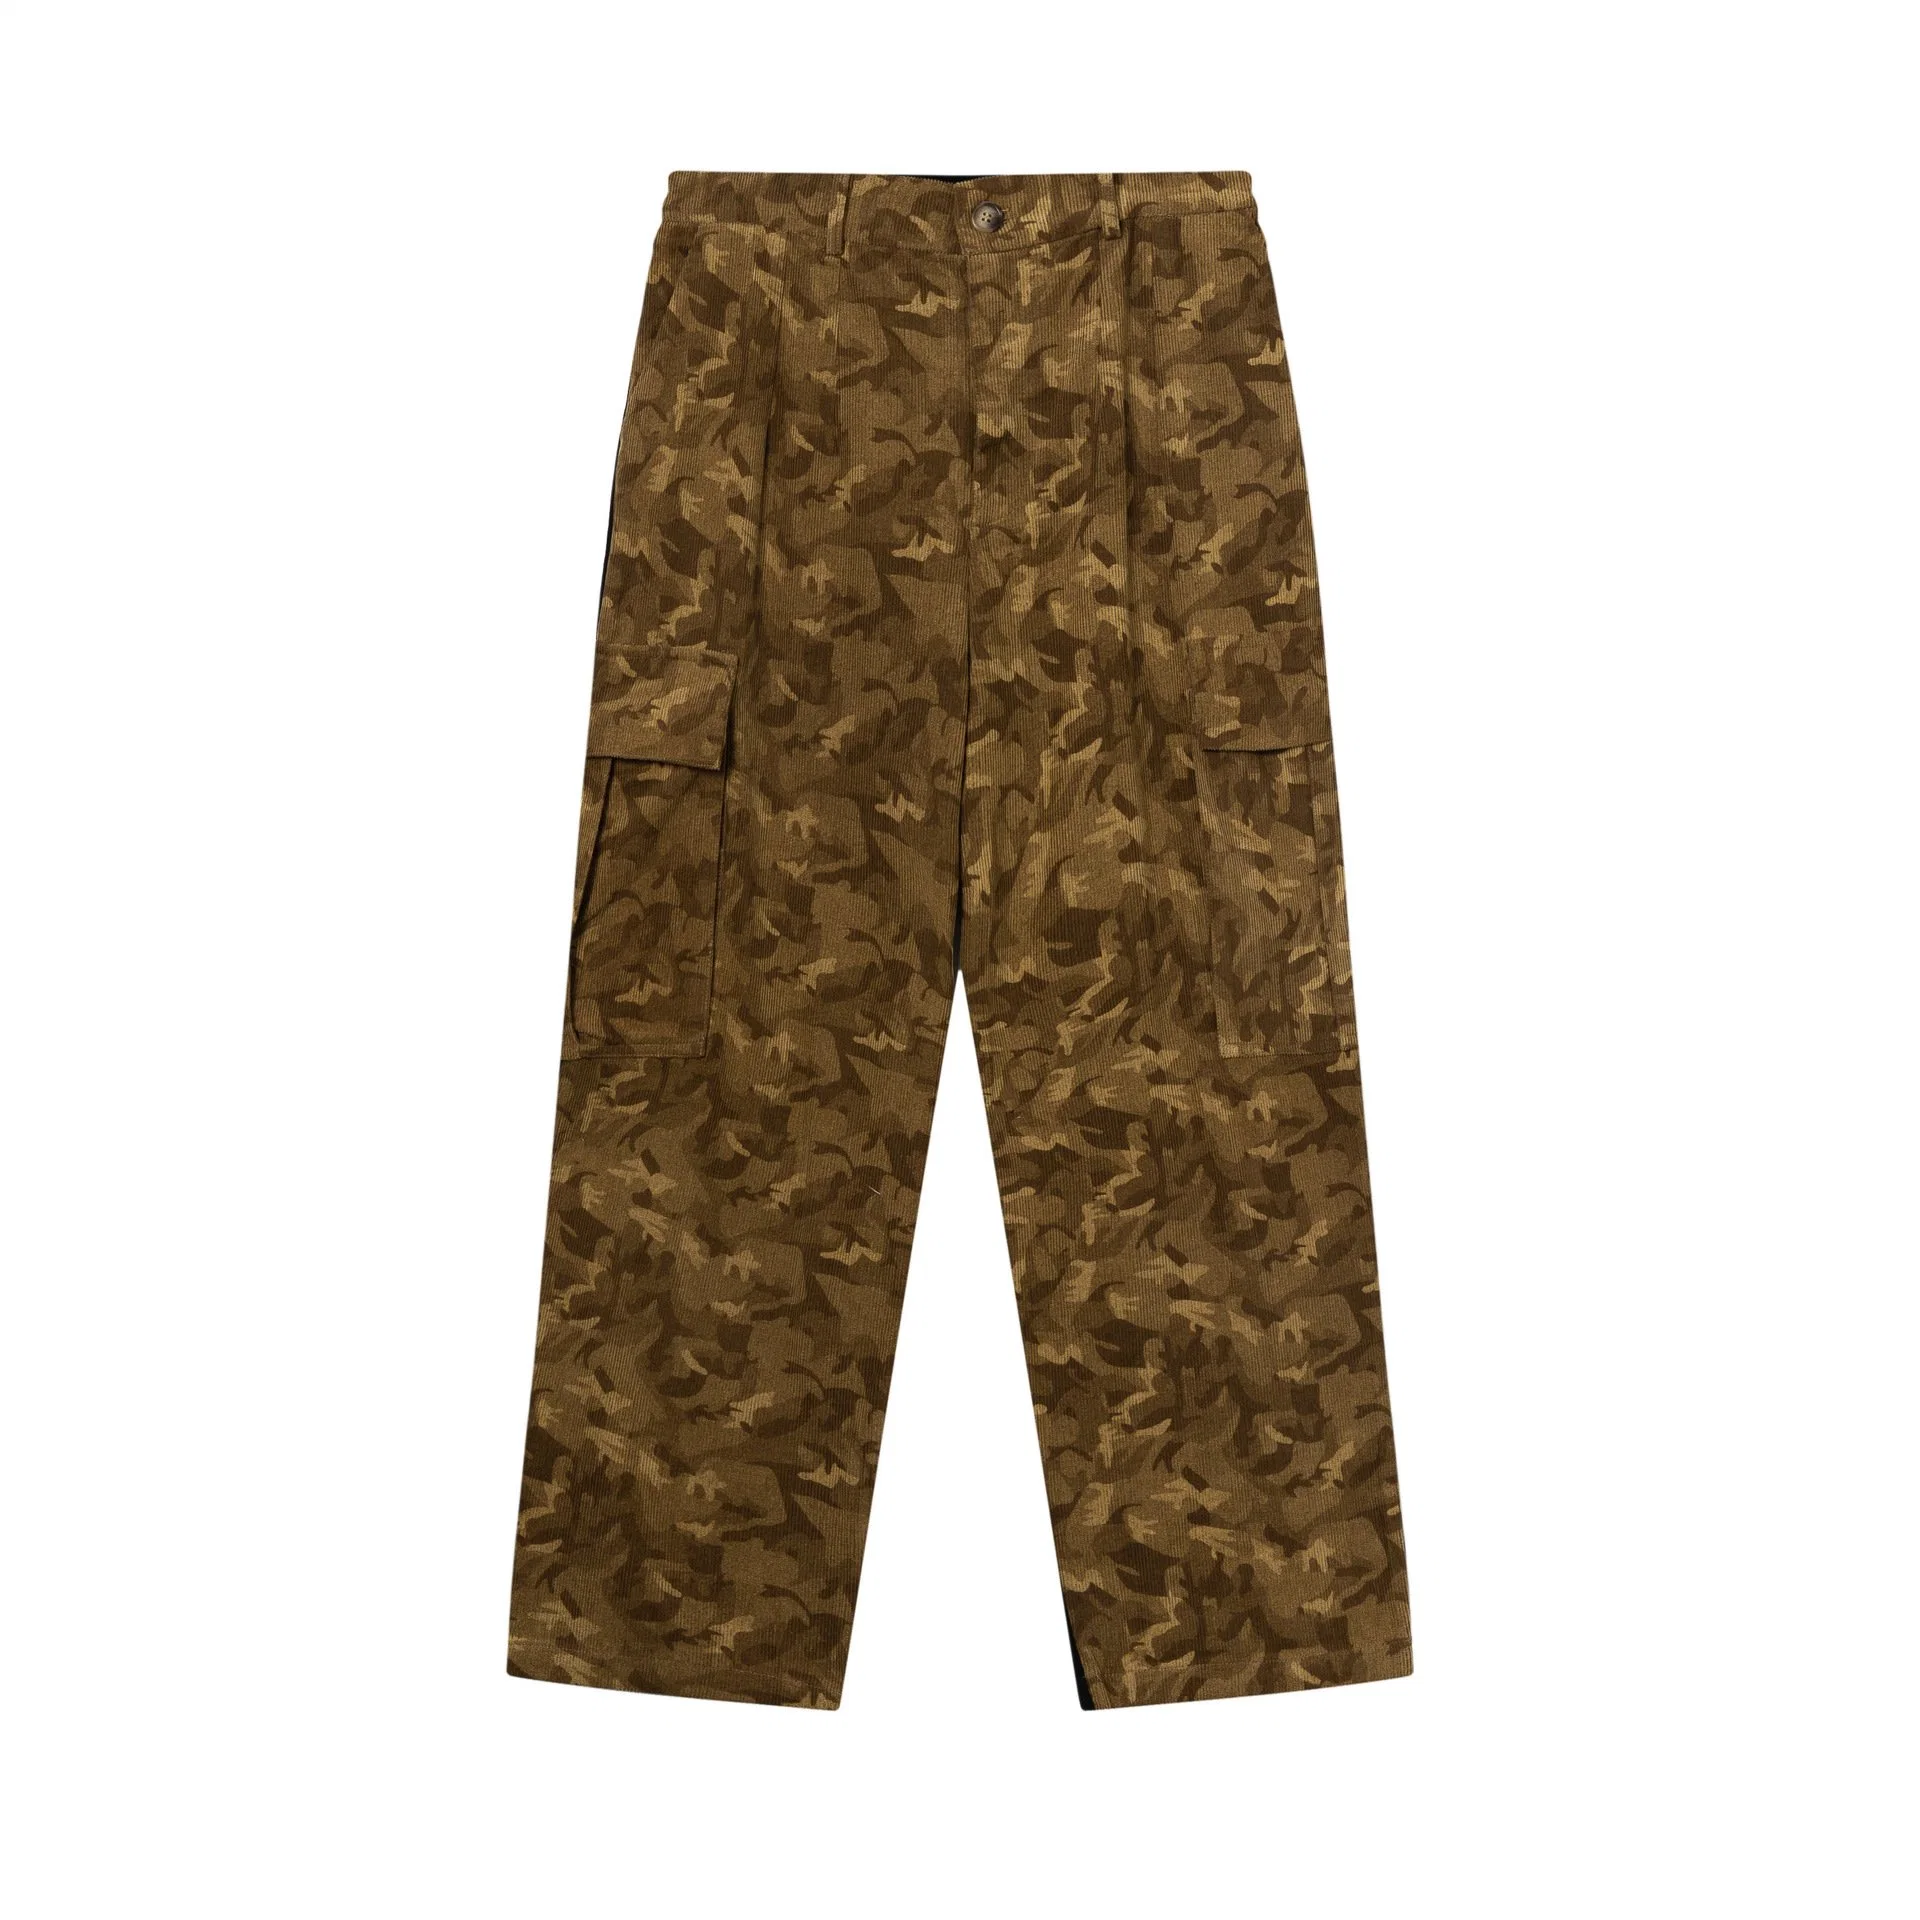 Le Camouflage européens et américains de velours côtelé poches tridimensionnelles de fret et de salopettes Terry Fashion pantalons de survêtement occasionnels lâche/Pantalon Pantalon/